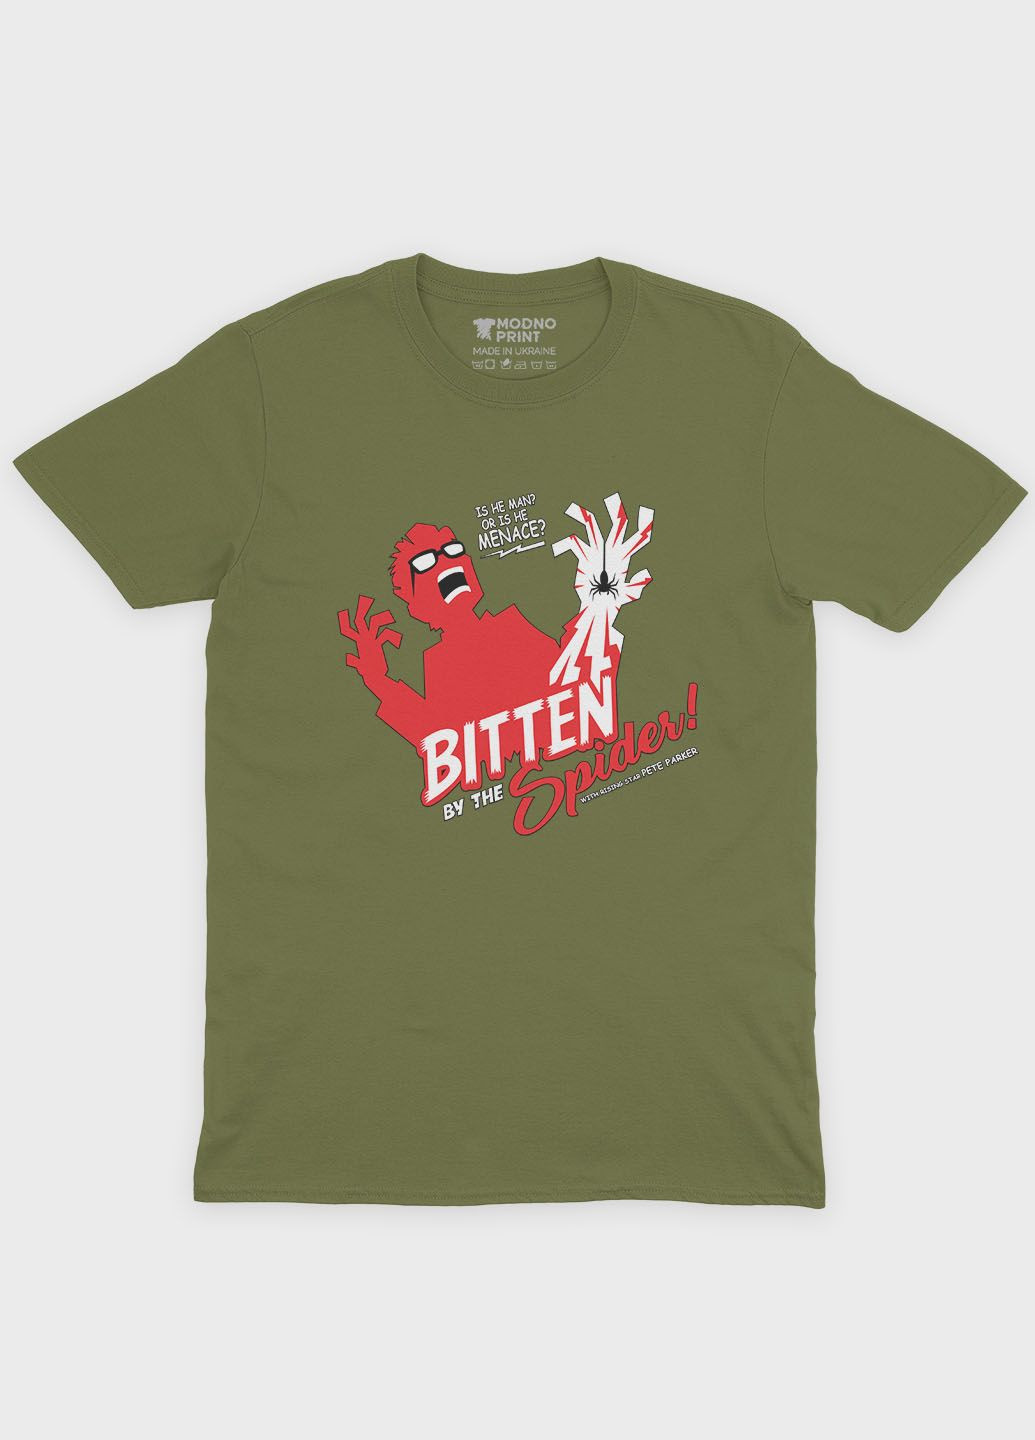 Хаки (оливковая) летняя мужская футболка с принтом супергероя - человек-паук (ts001-1-hgr-006-014-027-f) Modno